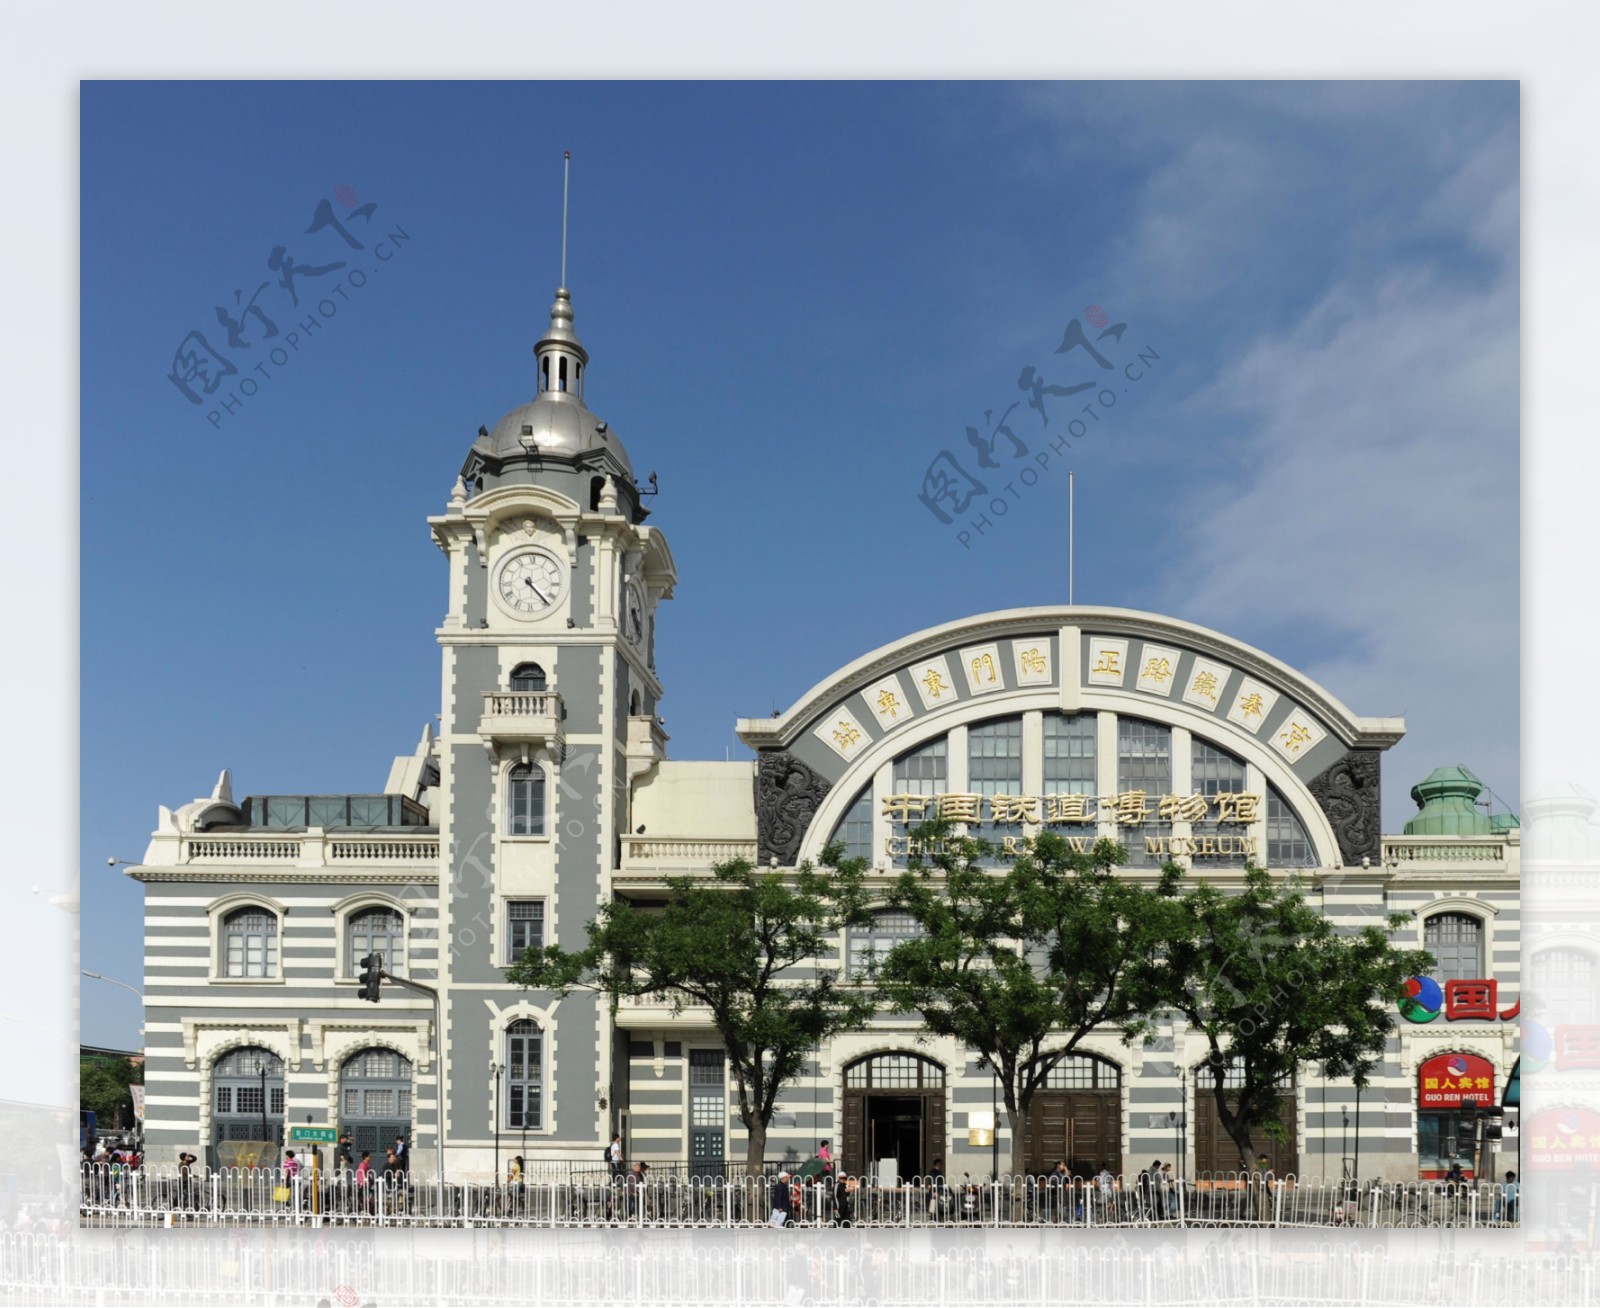 中国铁道博物馆图片